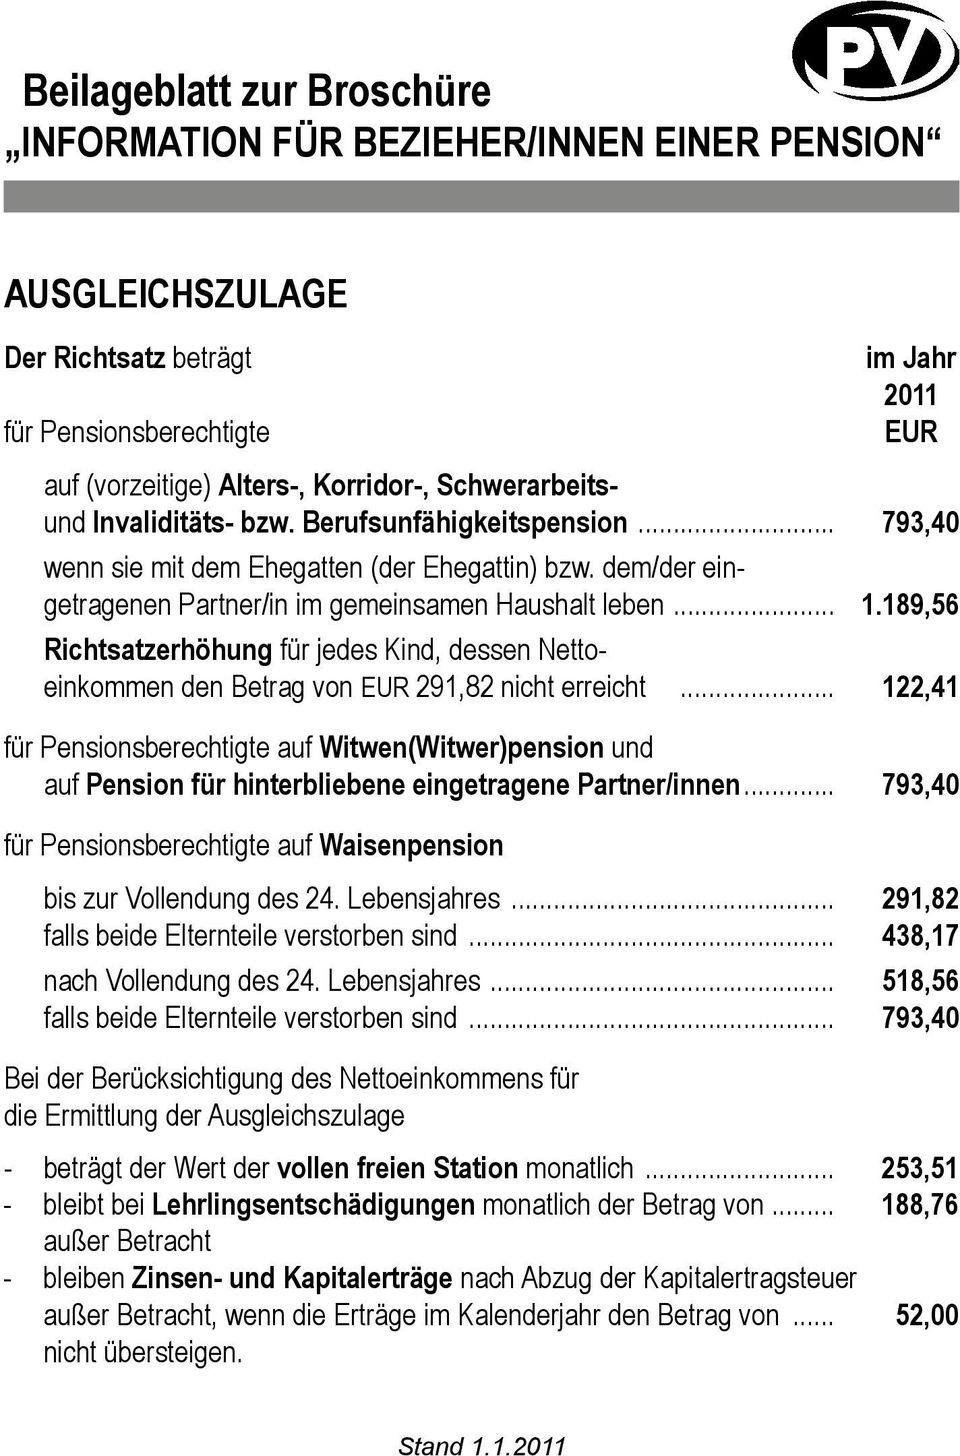 189,56 Richtsatzerhöhung für jedes Kind, dessen Nettoeinkommen den Betrag von EUR 291,82 nicht erreicht.